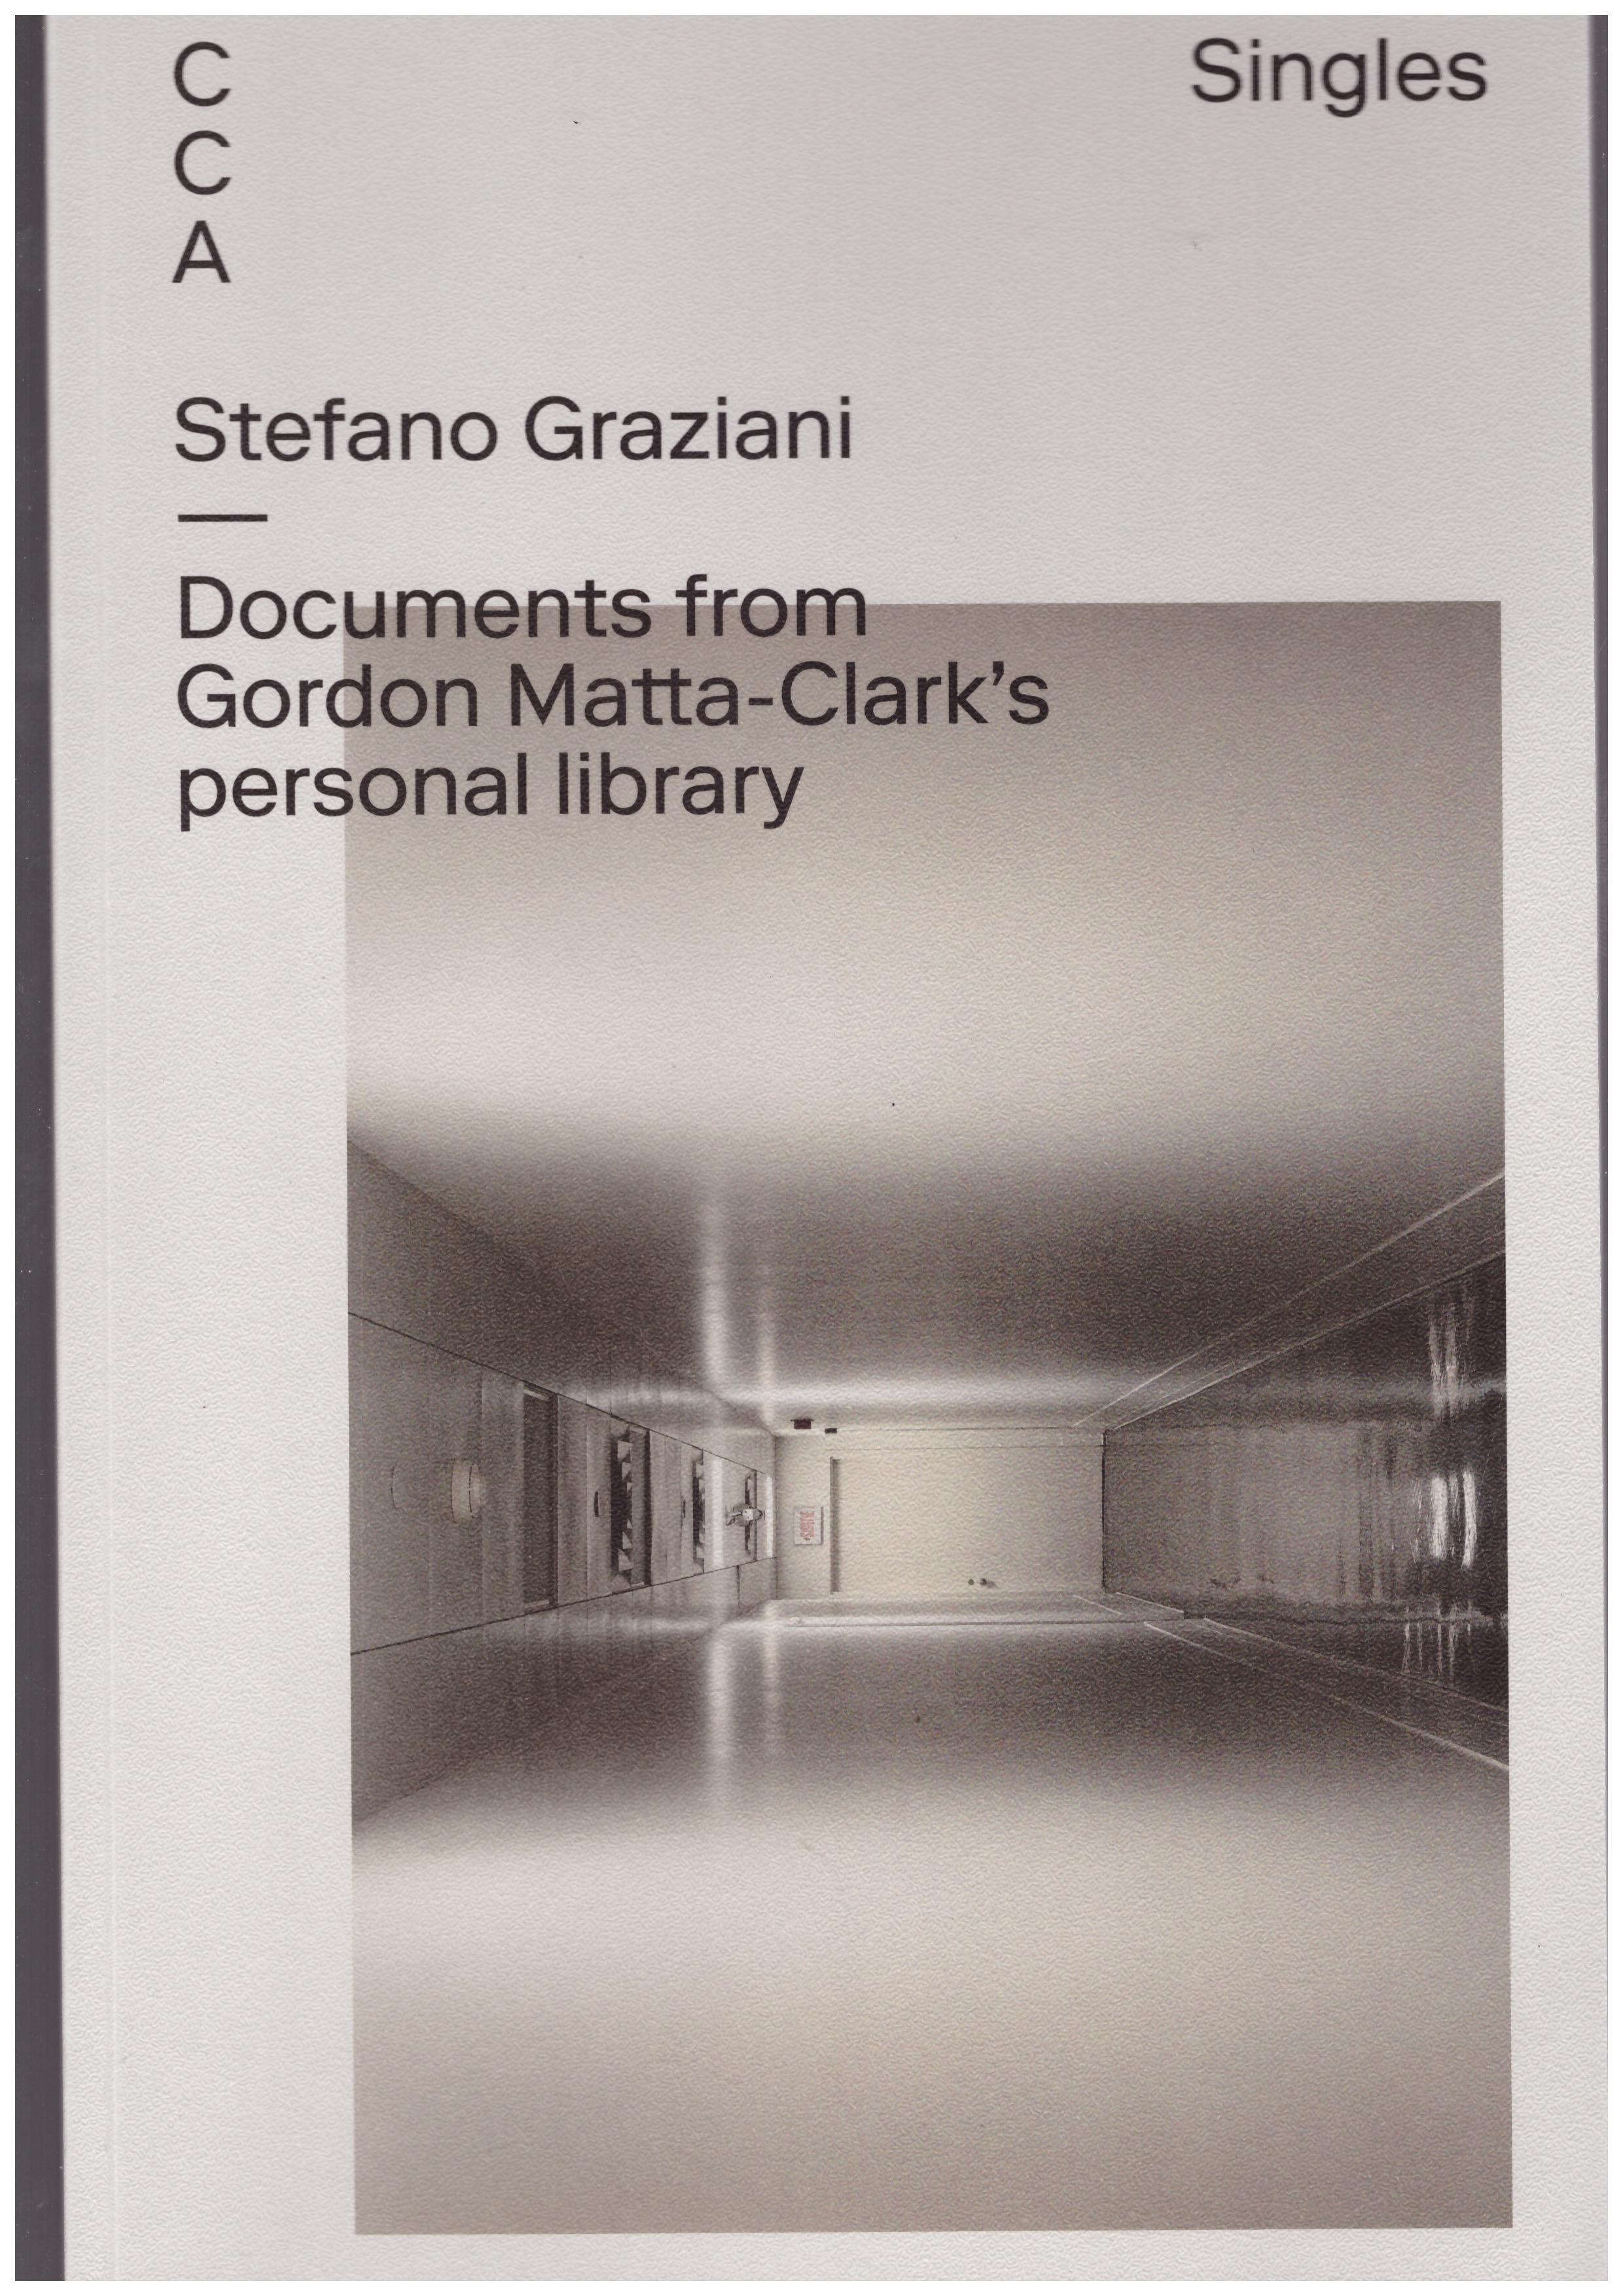 GRAZIANI, Stefano - CCA Singles – Documents from Gordon Matta-Clark’s personal library